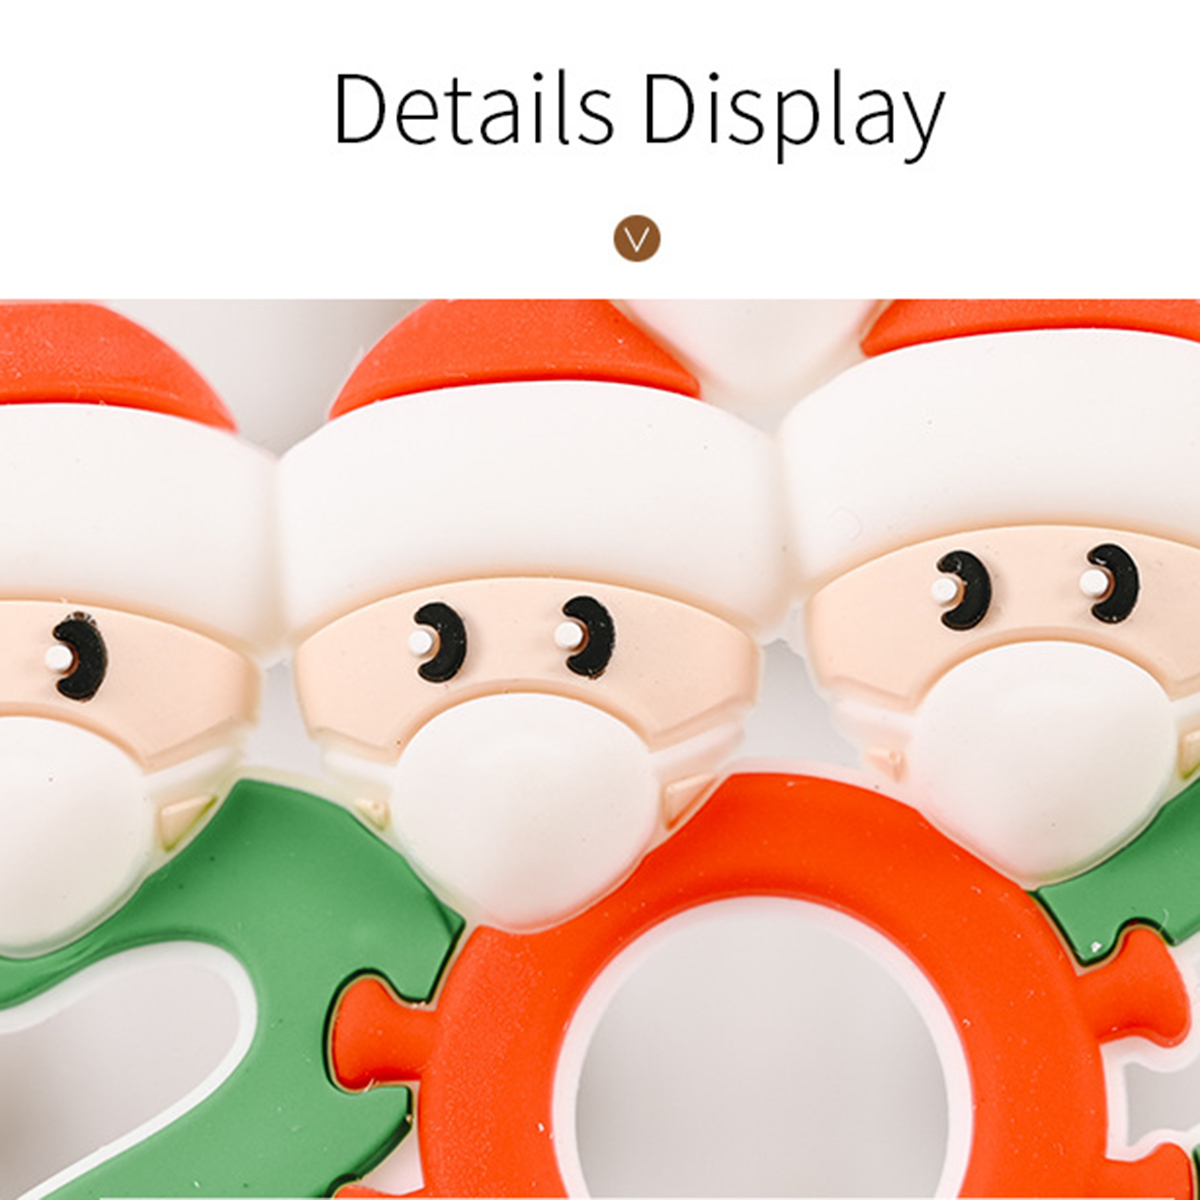 Mask-Santa-Snowman-Ornament-DIY-Name-Greetings-Christmas-Tree-Ornament-for-Christmas-Tree-Decoration-1786417-2